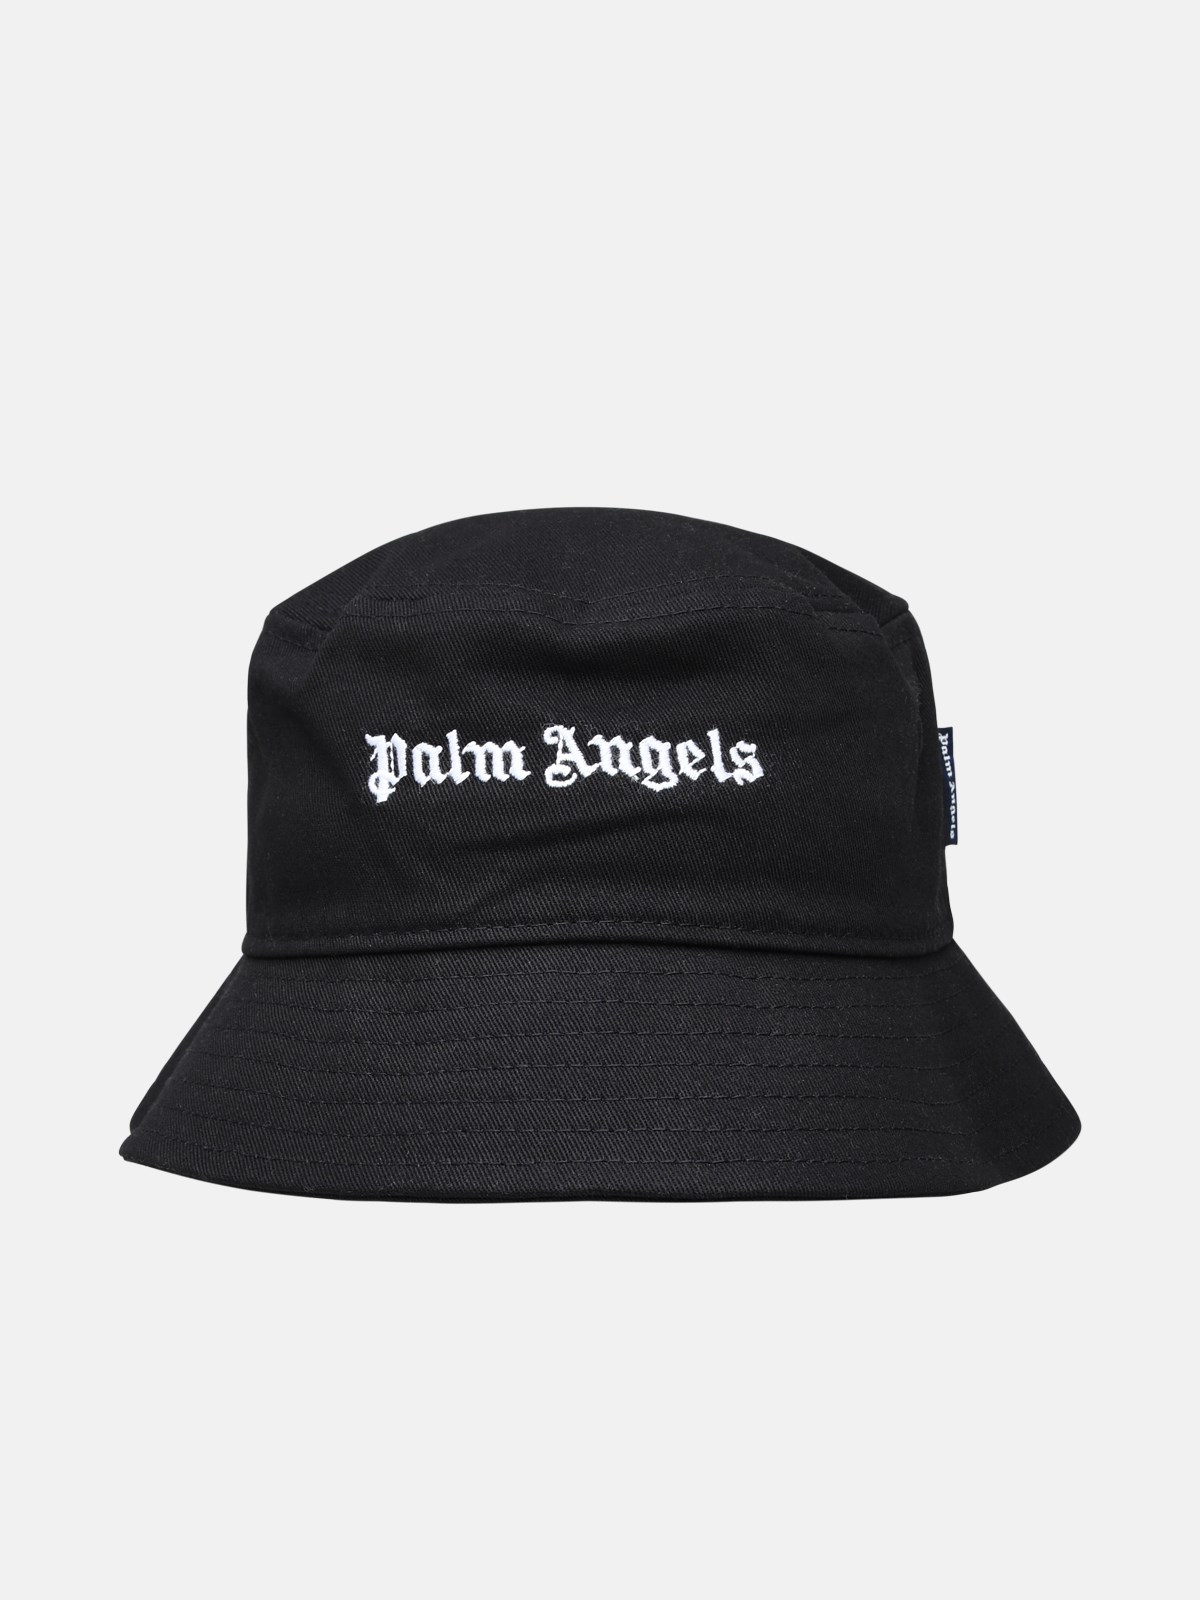 Palm Angels Kids' Black Cotton Cap